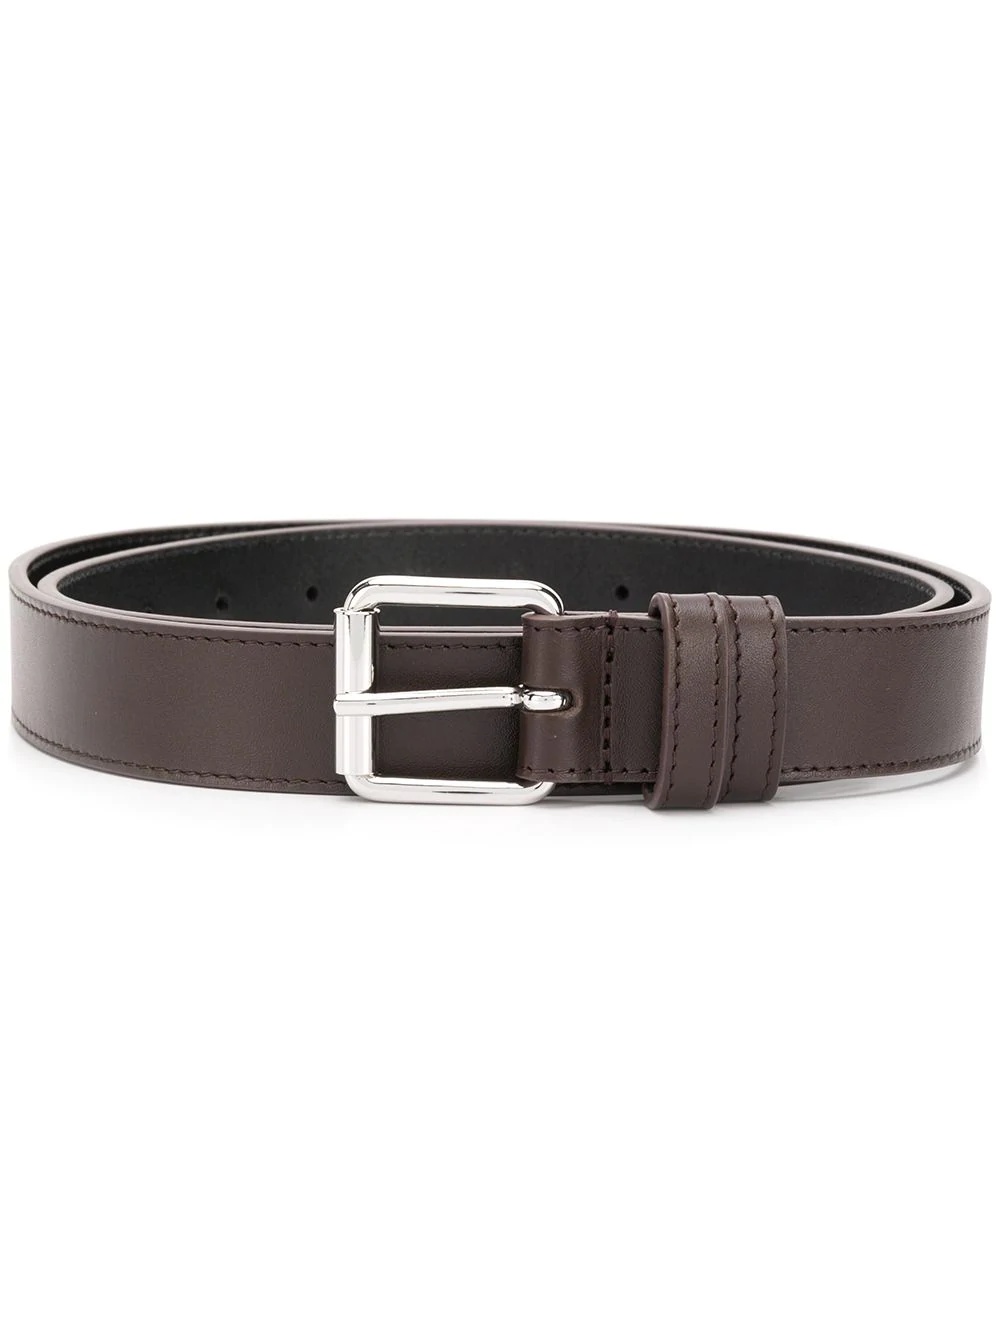 square-tip leather belt - 1